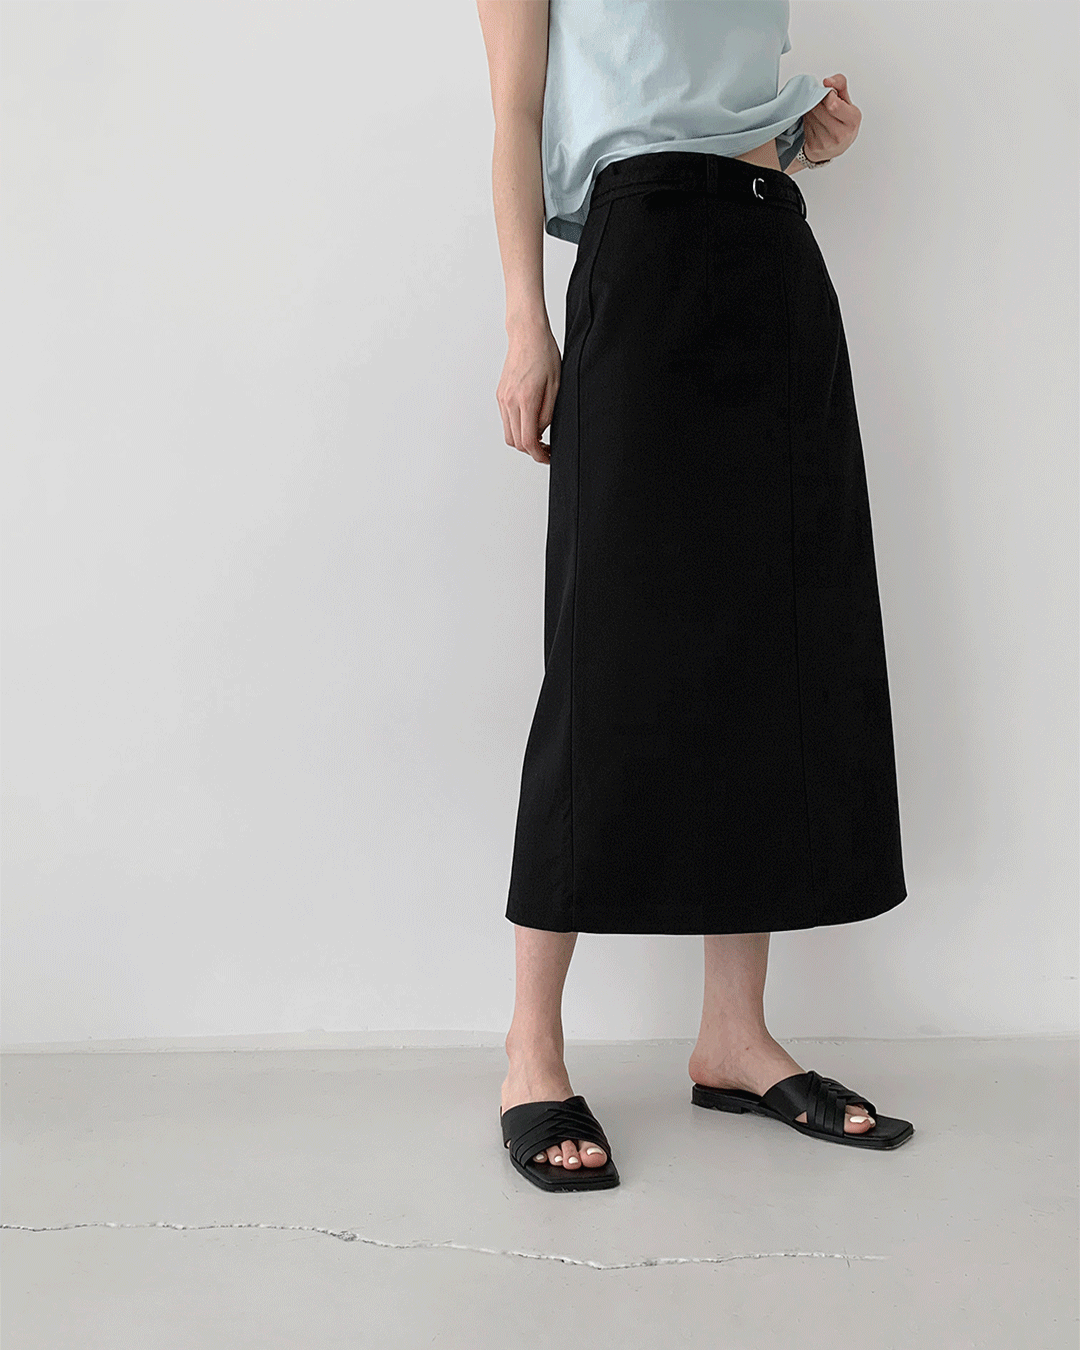 Lua skirt